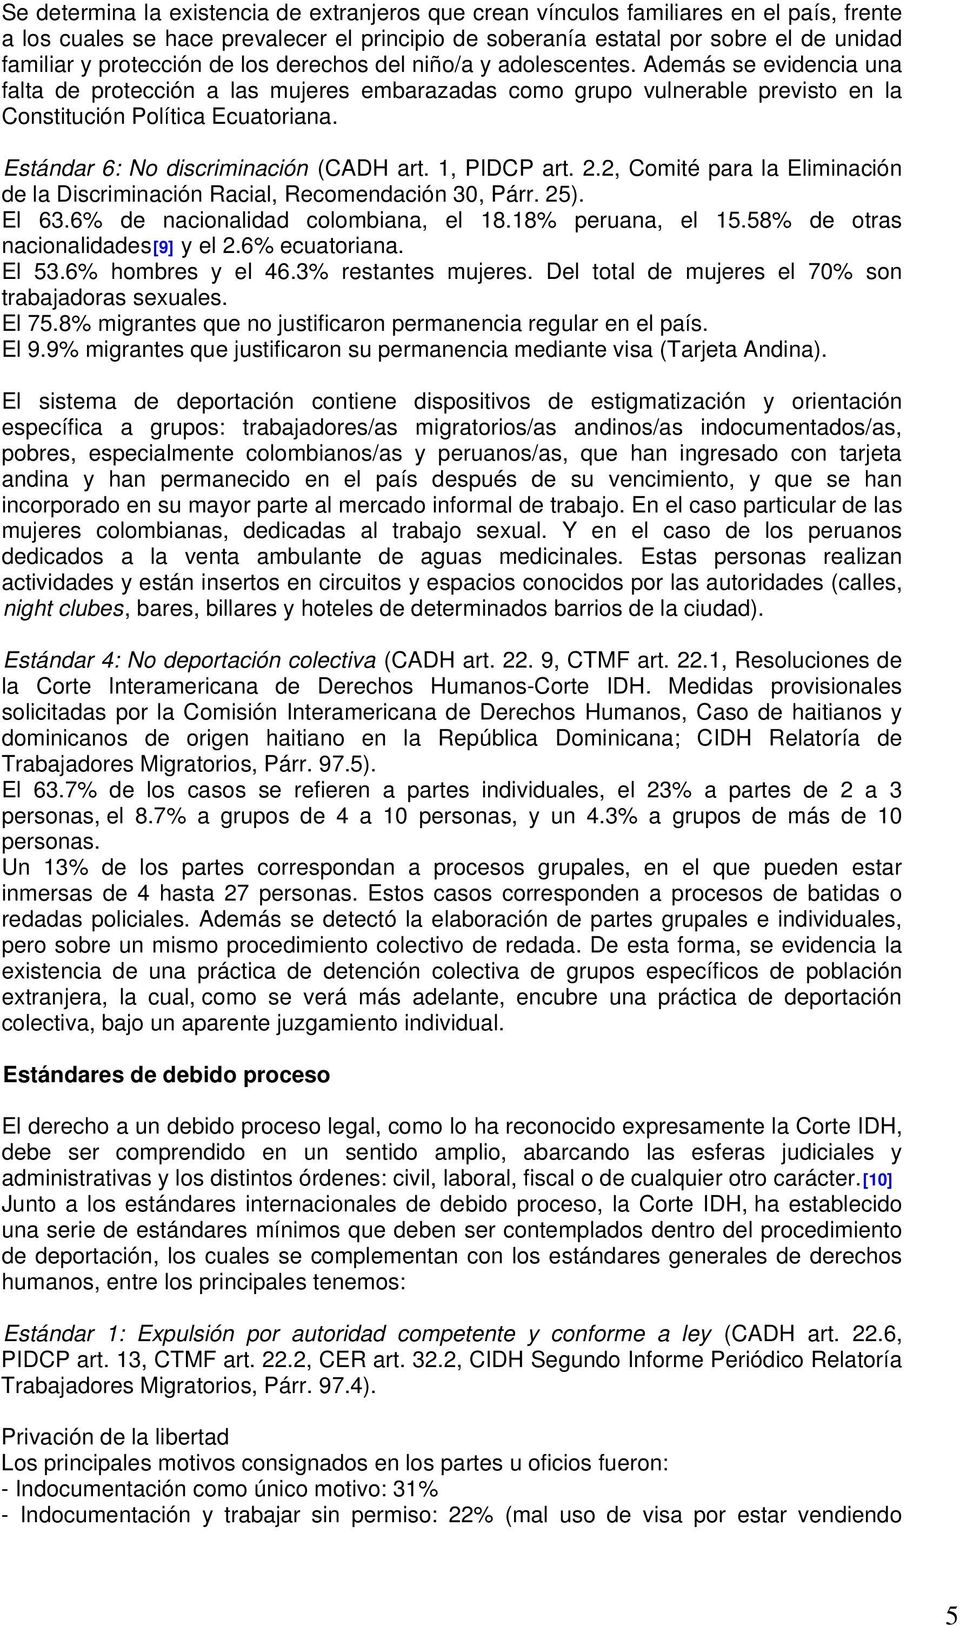 Estándar 6: No discriminación (CADH art. 1, PIDCP art. 2.2, Comité para la Eliminación de la Discriminación Racial, Recomendación 30, Párr. 25). El 63.6% de nacionalidad colombiana, el 18.